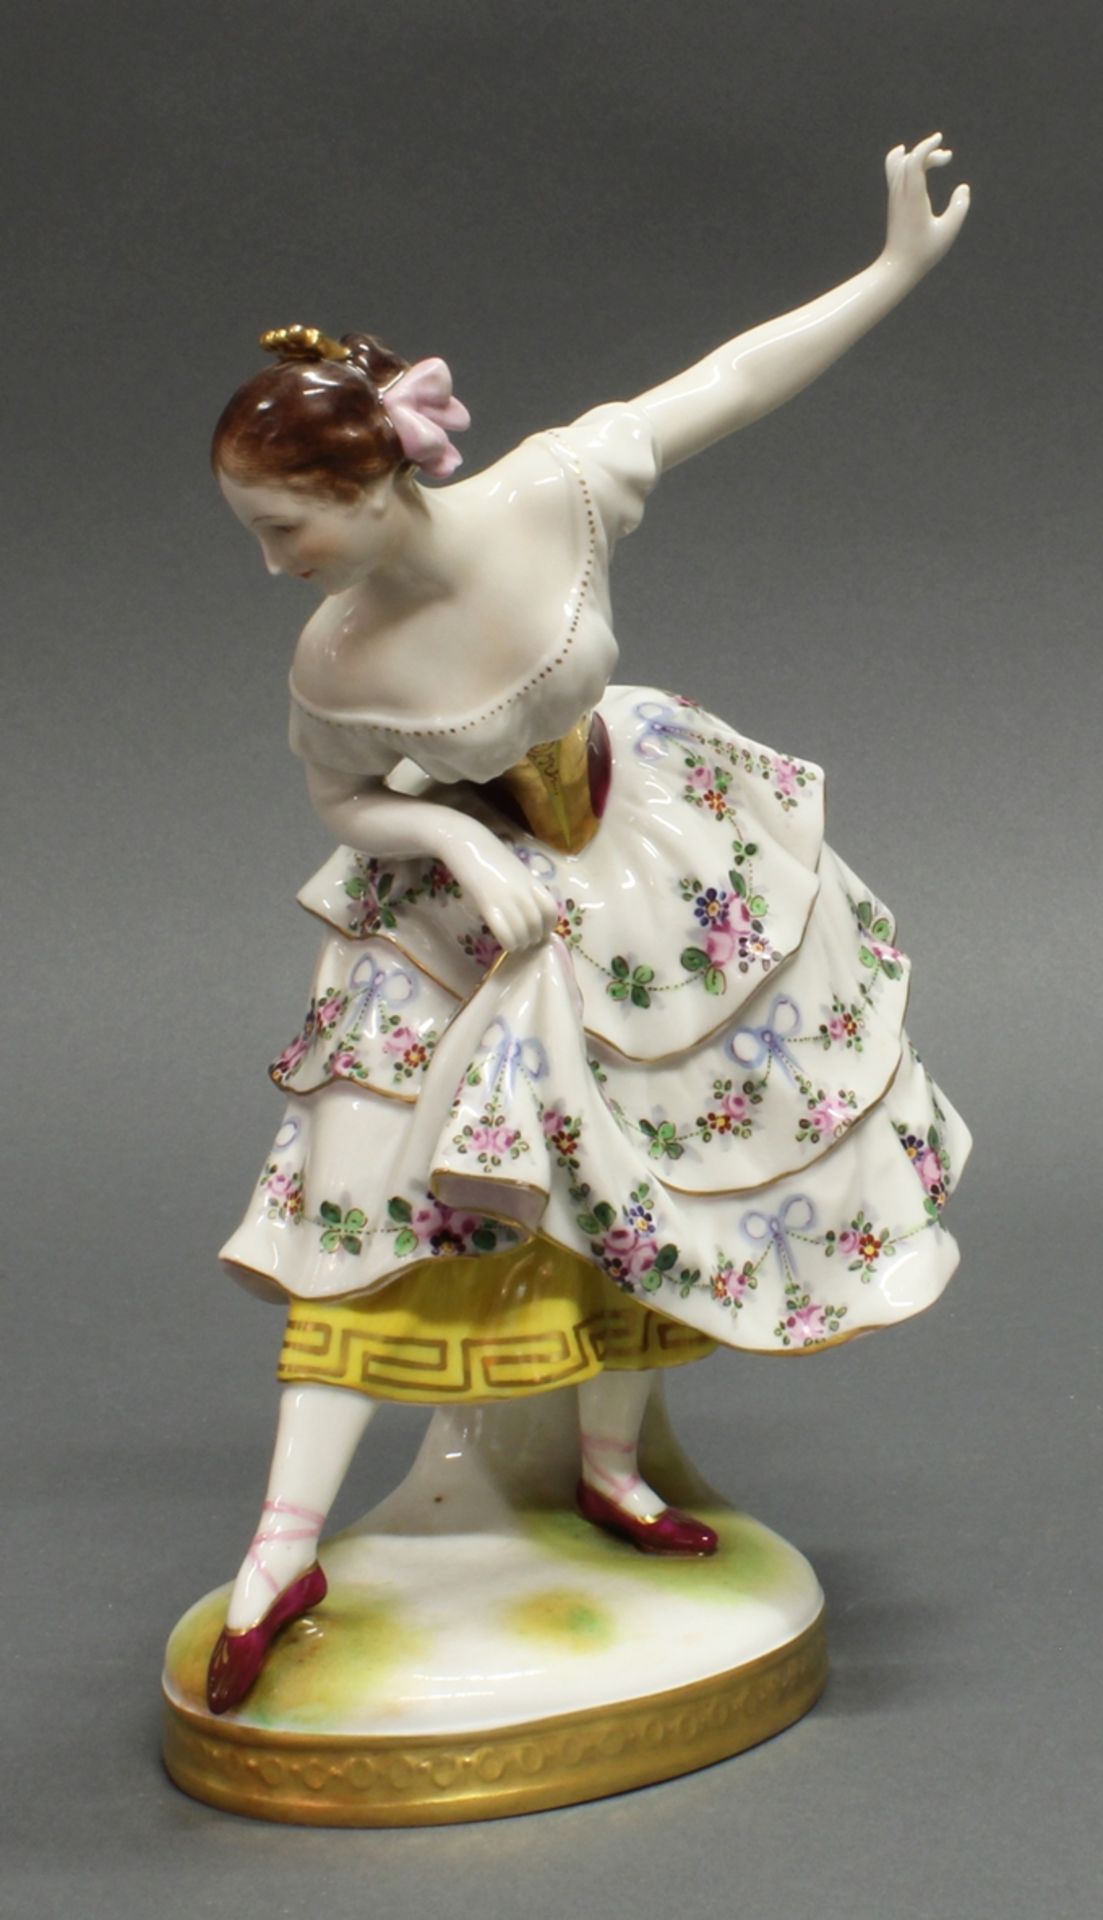 Porzellanfigur, "Tänzerin Fanny Elßler", Volkstedt, 1915-1934, polychrom und goldstaffiert, 23.5 cm